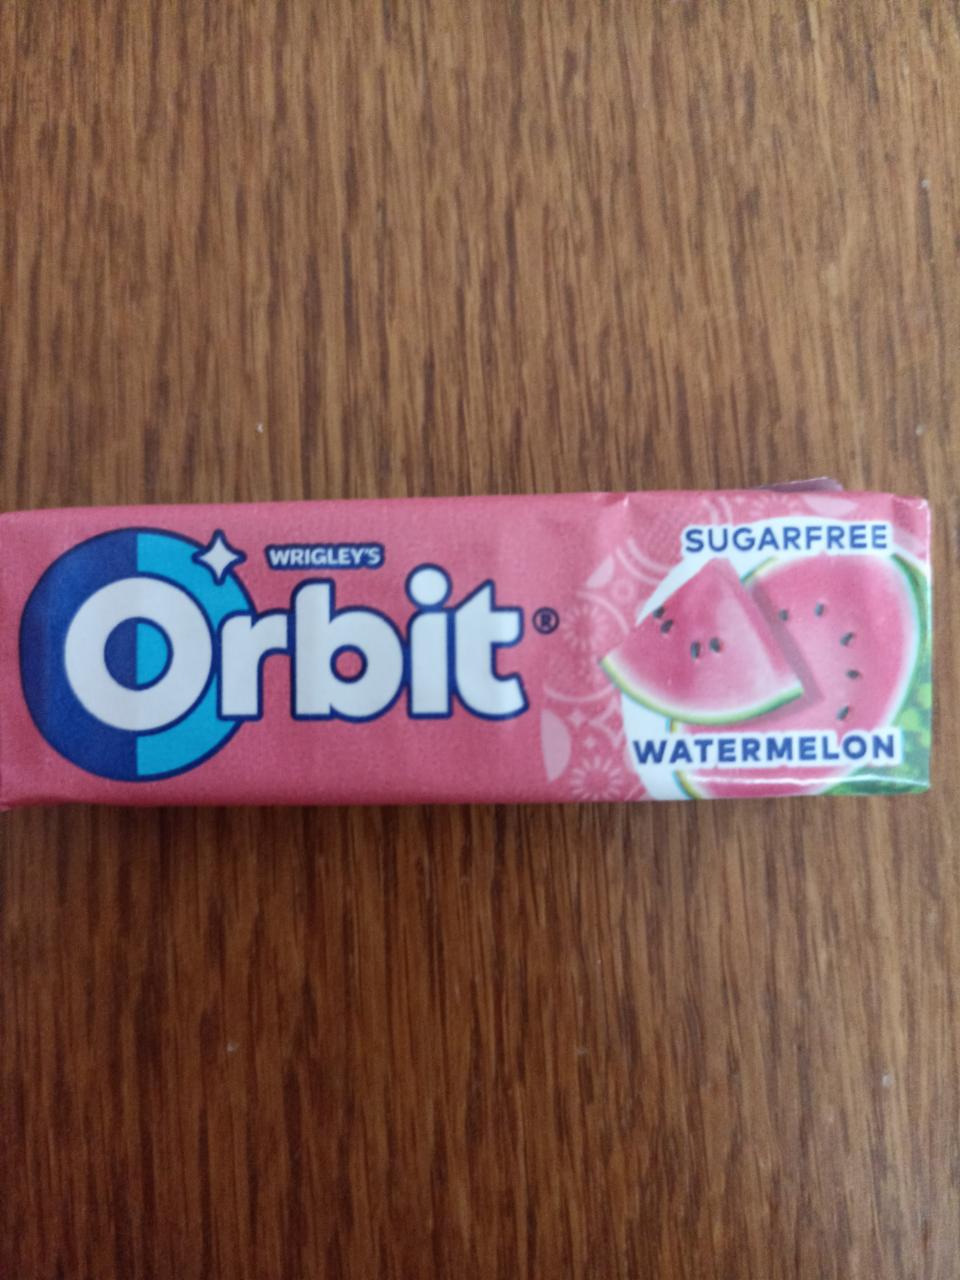 Fotografie - Orbit meloun žvýkačky